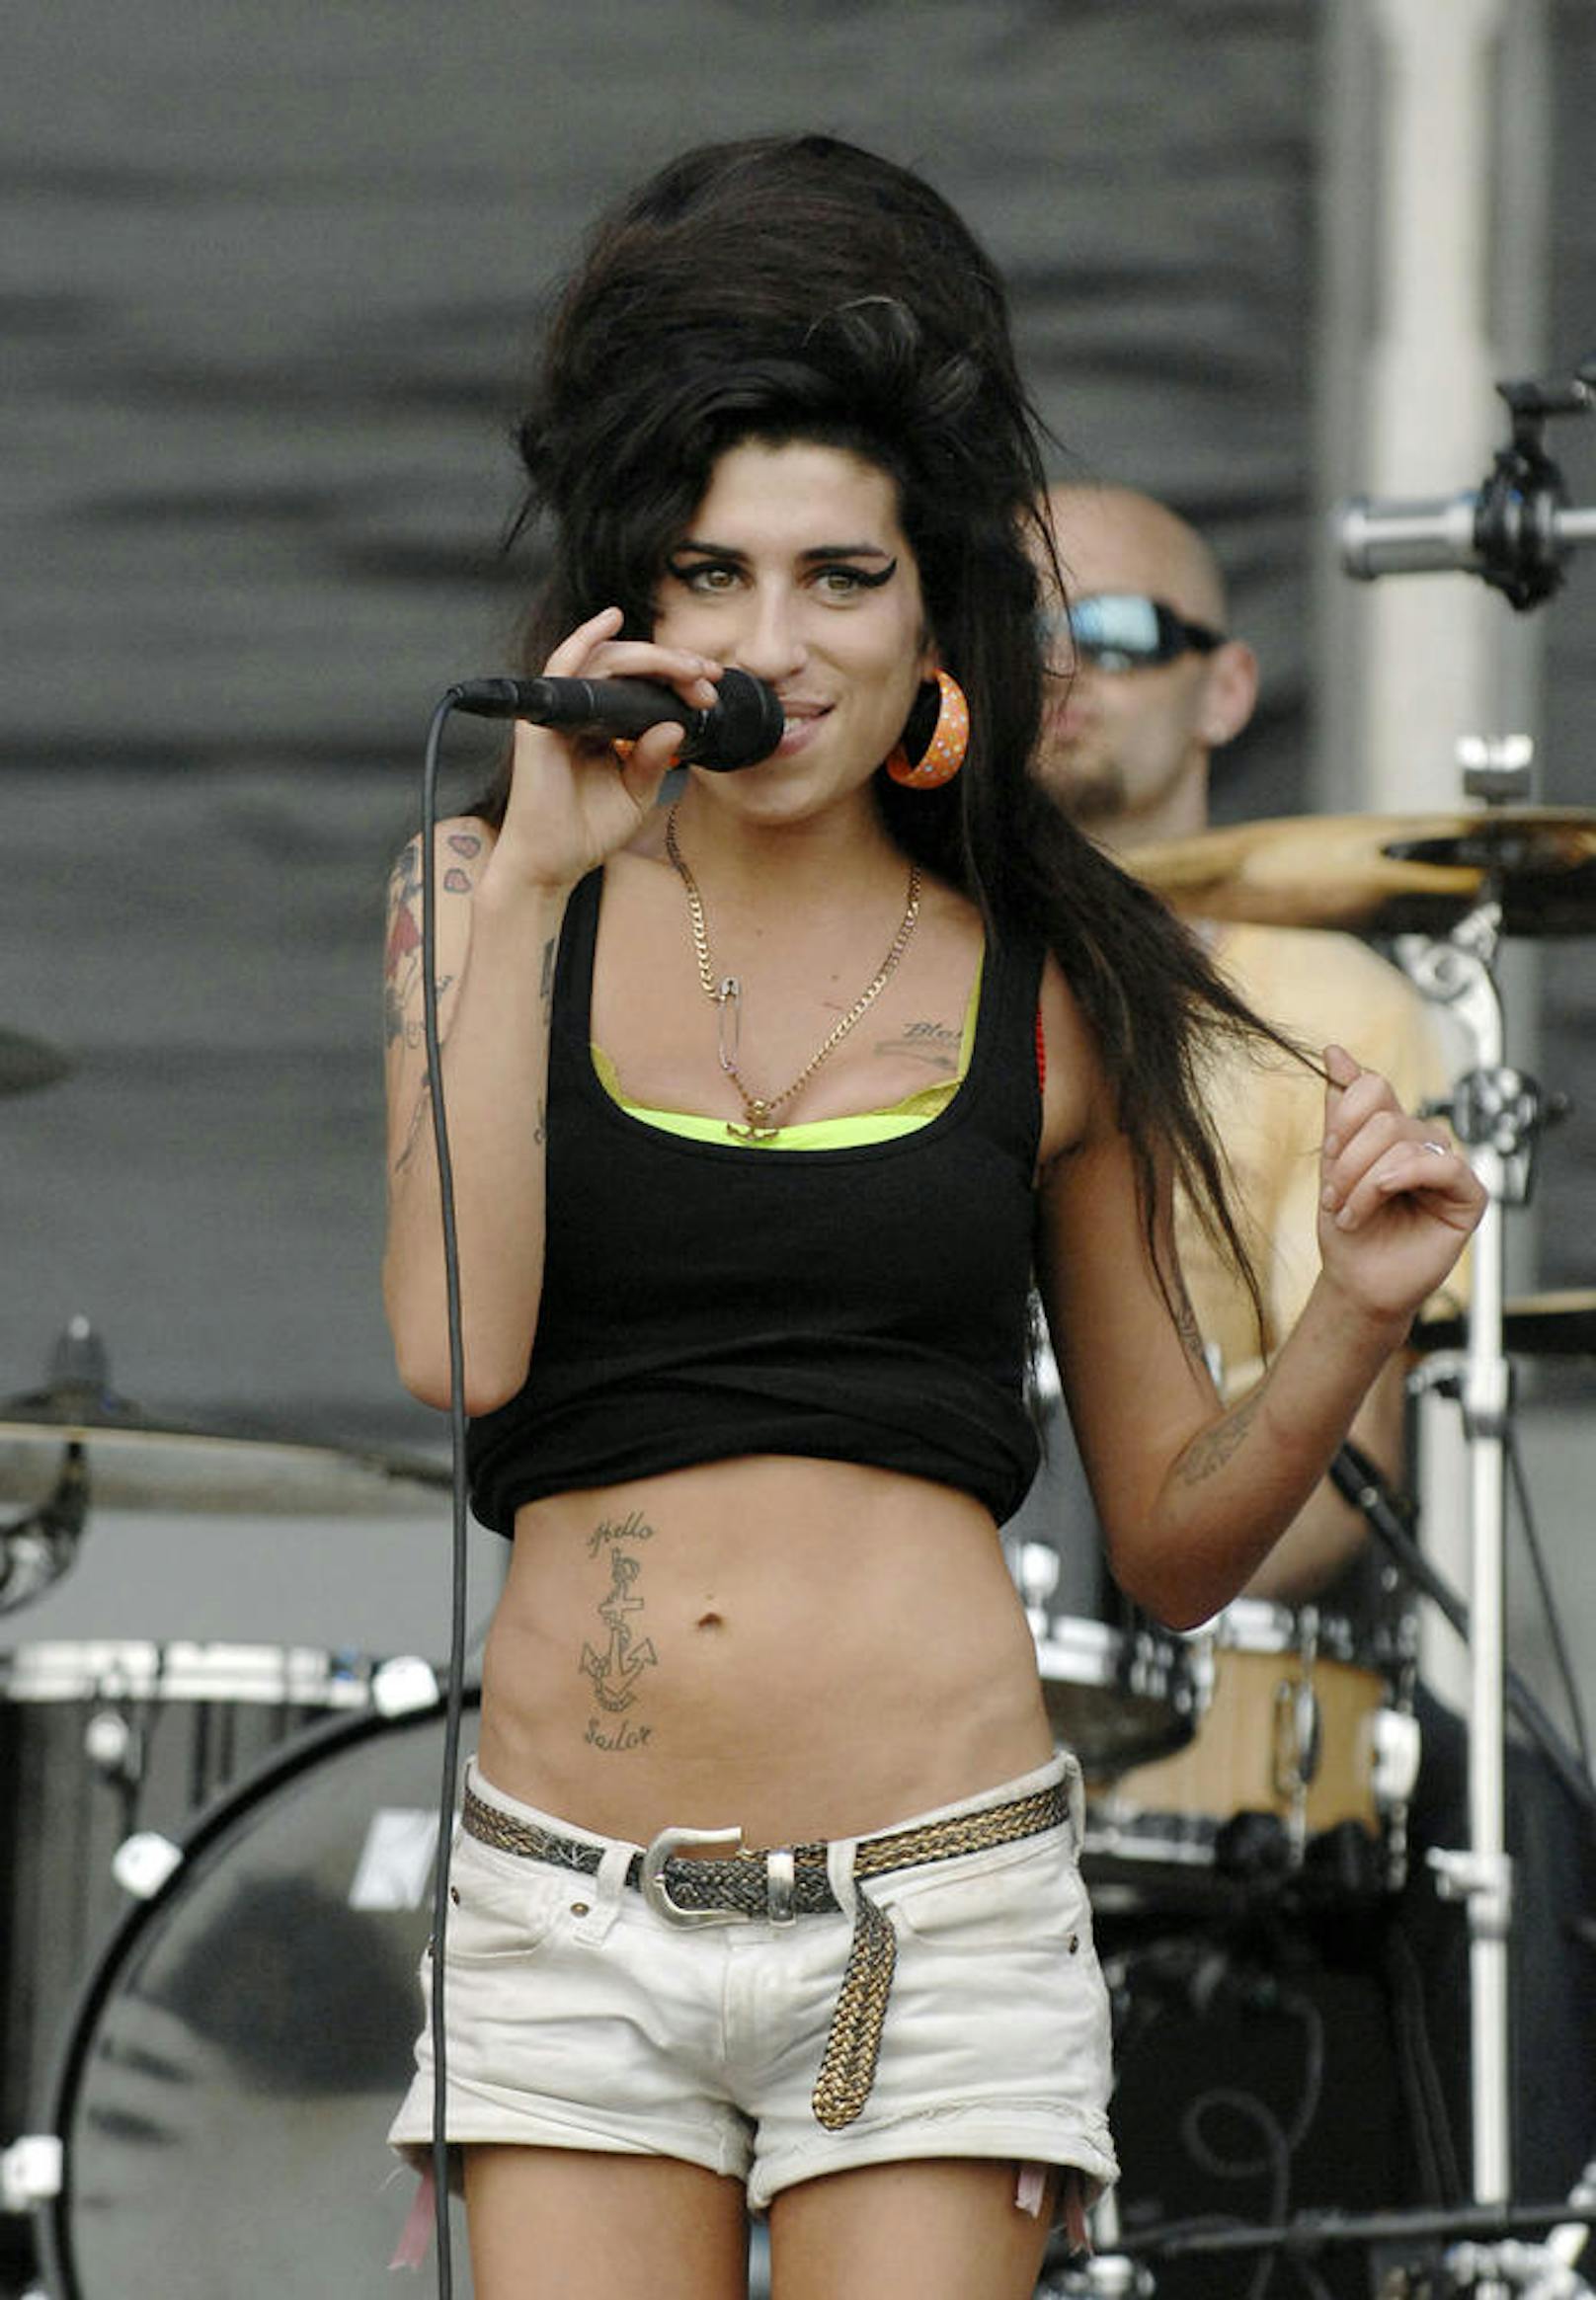 Trotz ihres beruflichen Erfolgs kämpfte Winehouse mit persönlichen Dämonen und gesundheitlichen Problemen.